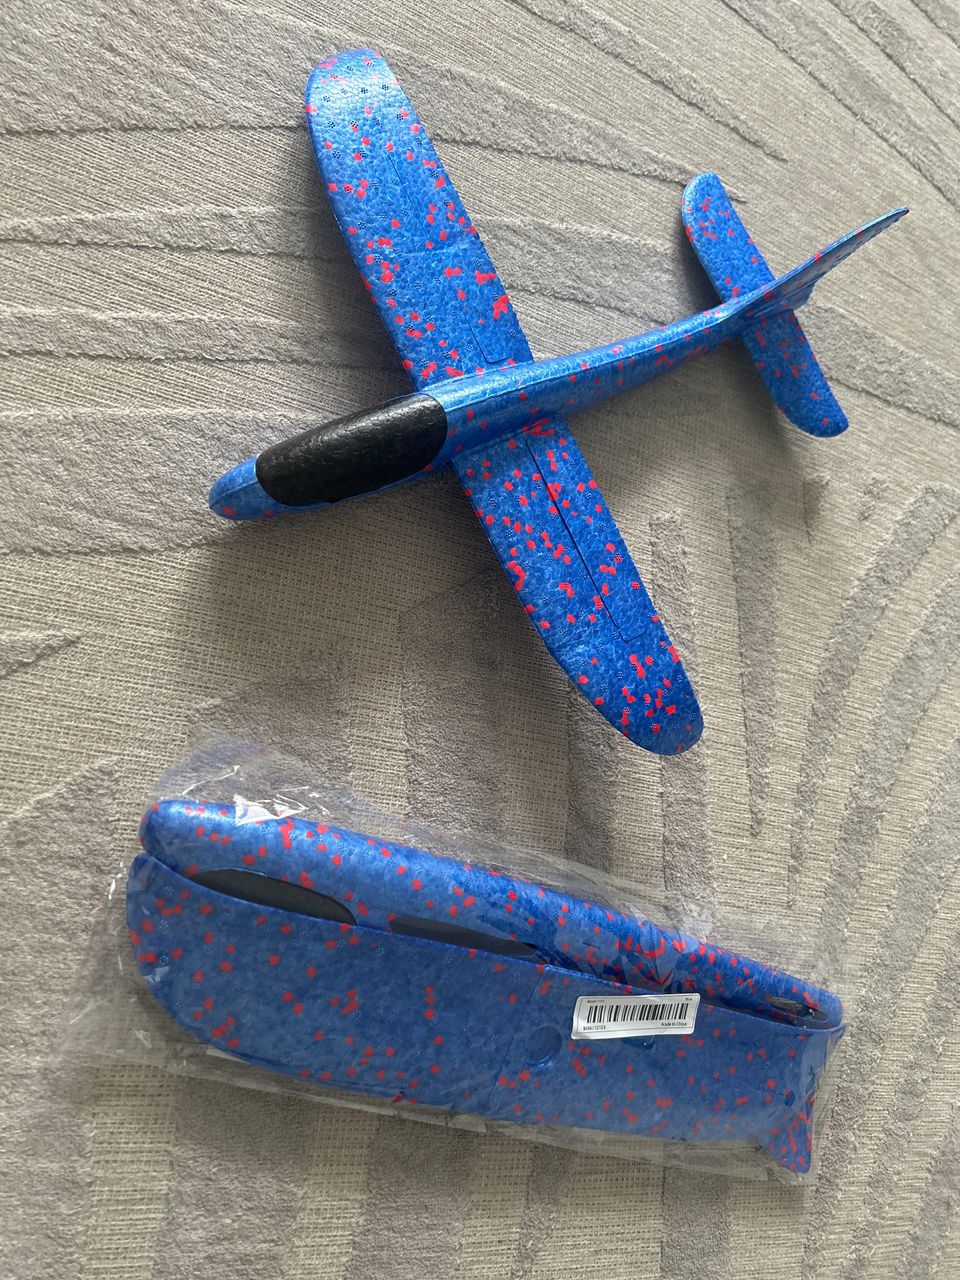 Lasten lennätettävä sininen lentokone